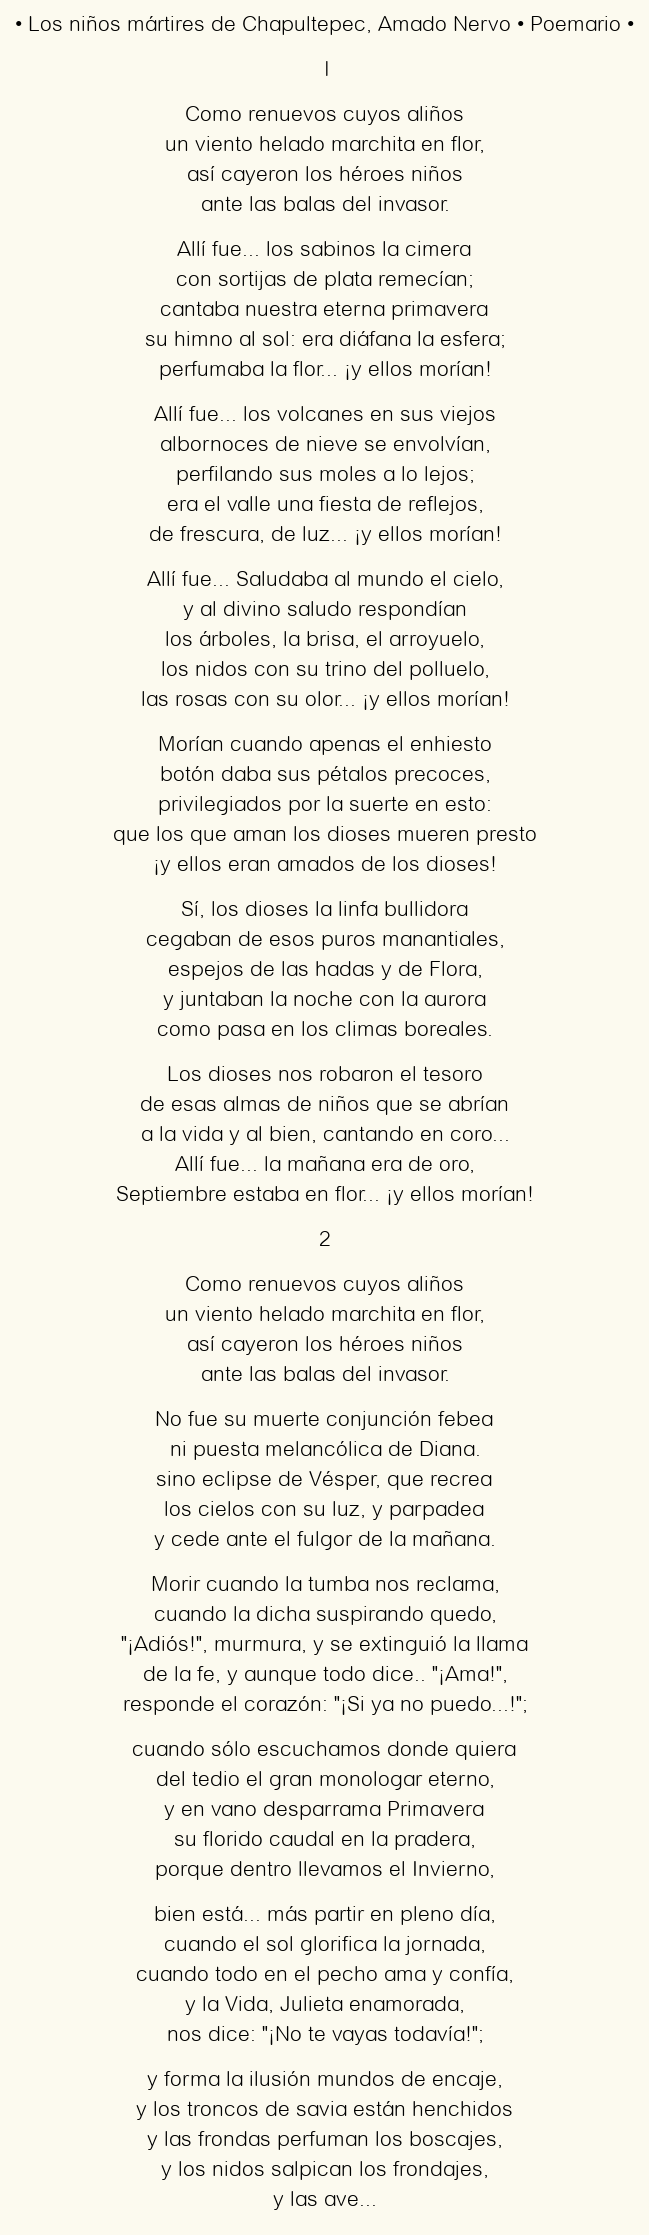 Imagen con el poema Los niños mártires de Chapultepec, por Amado Nervo